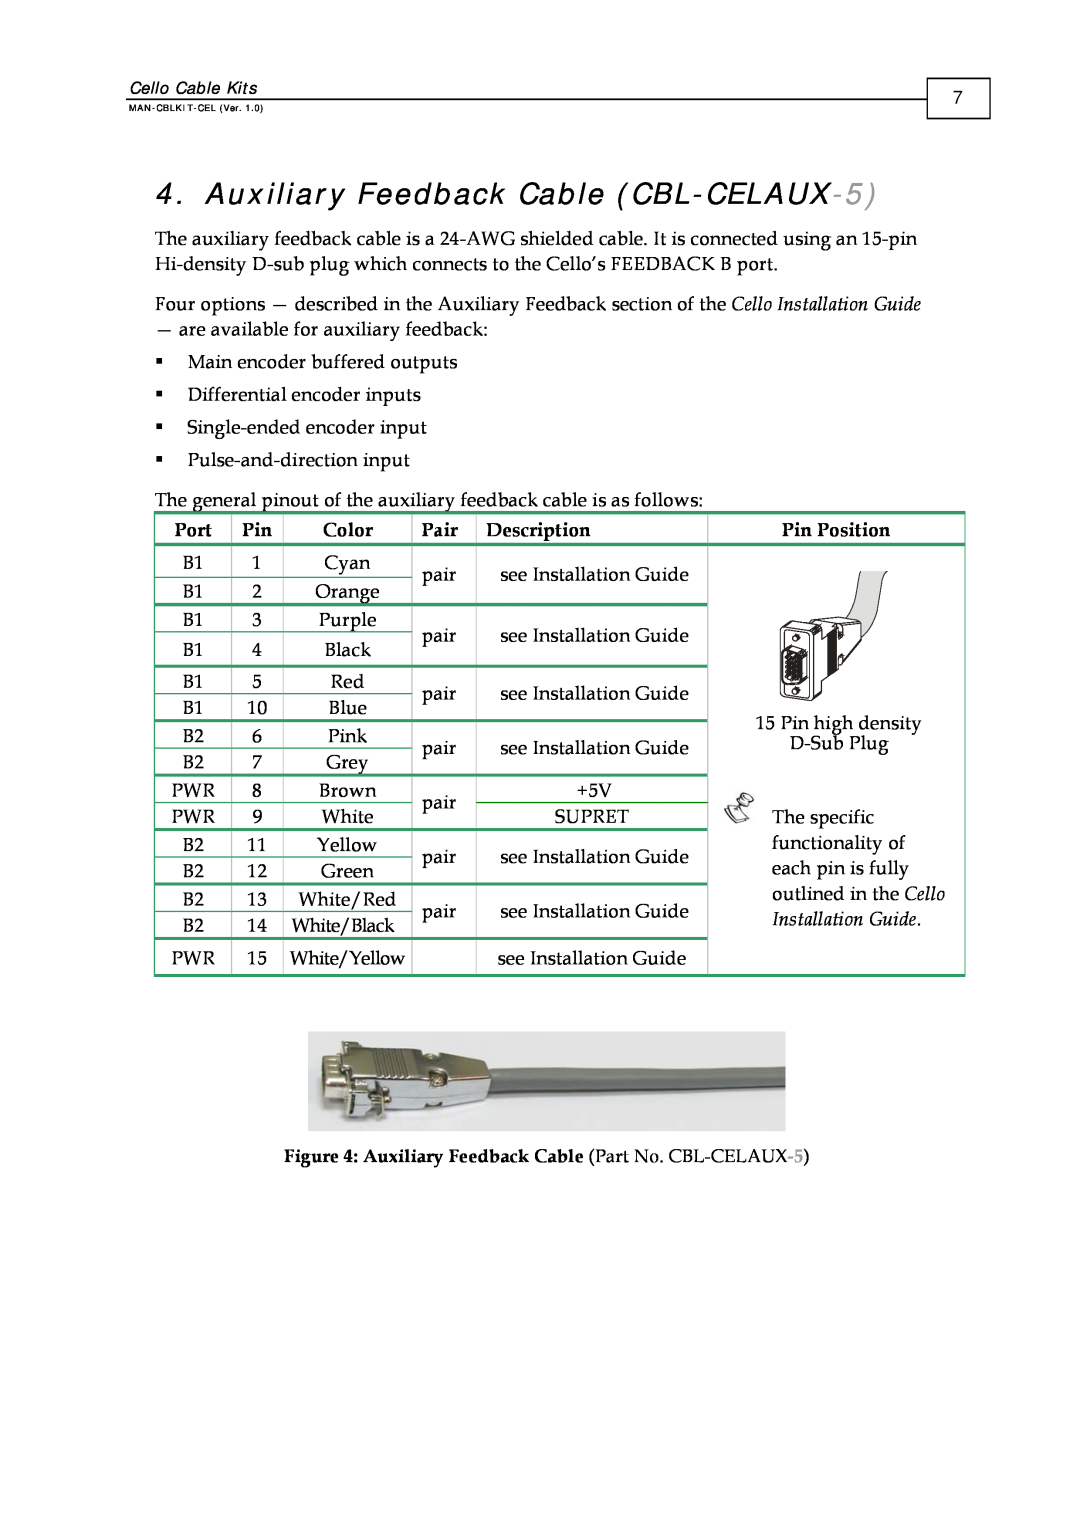 Elmo CBL-DFDBK-5, CBL-CELIO1-5 manual Auxiliary Feedback Cable CBL-CELAUX-5, Auxiliary Feedback Cable Part No. CBL-CELAUX-5 